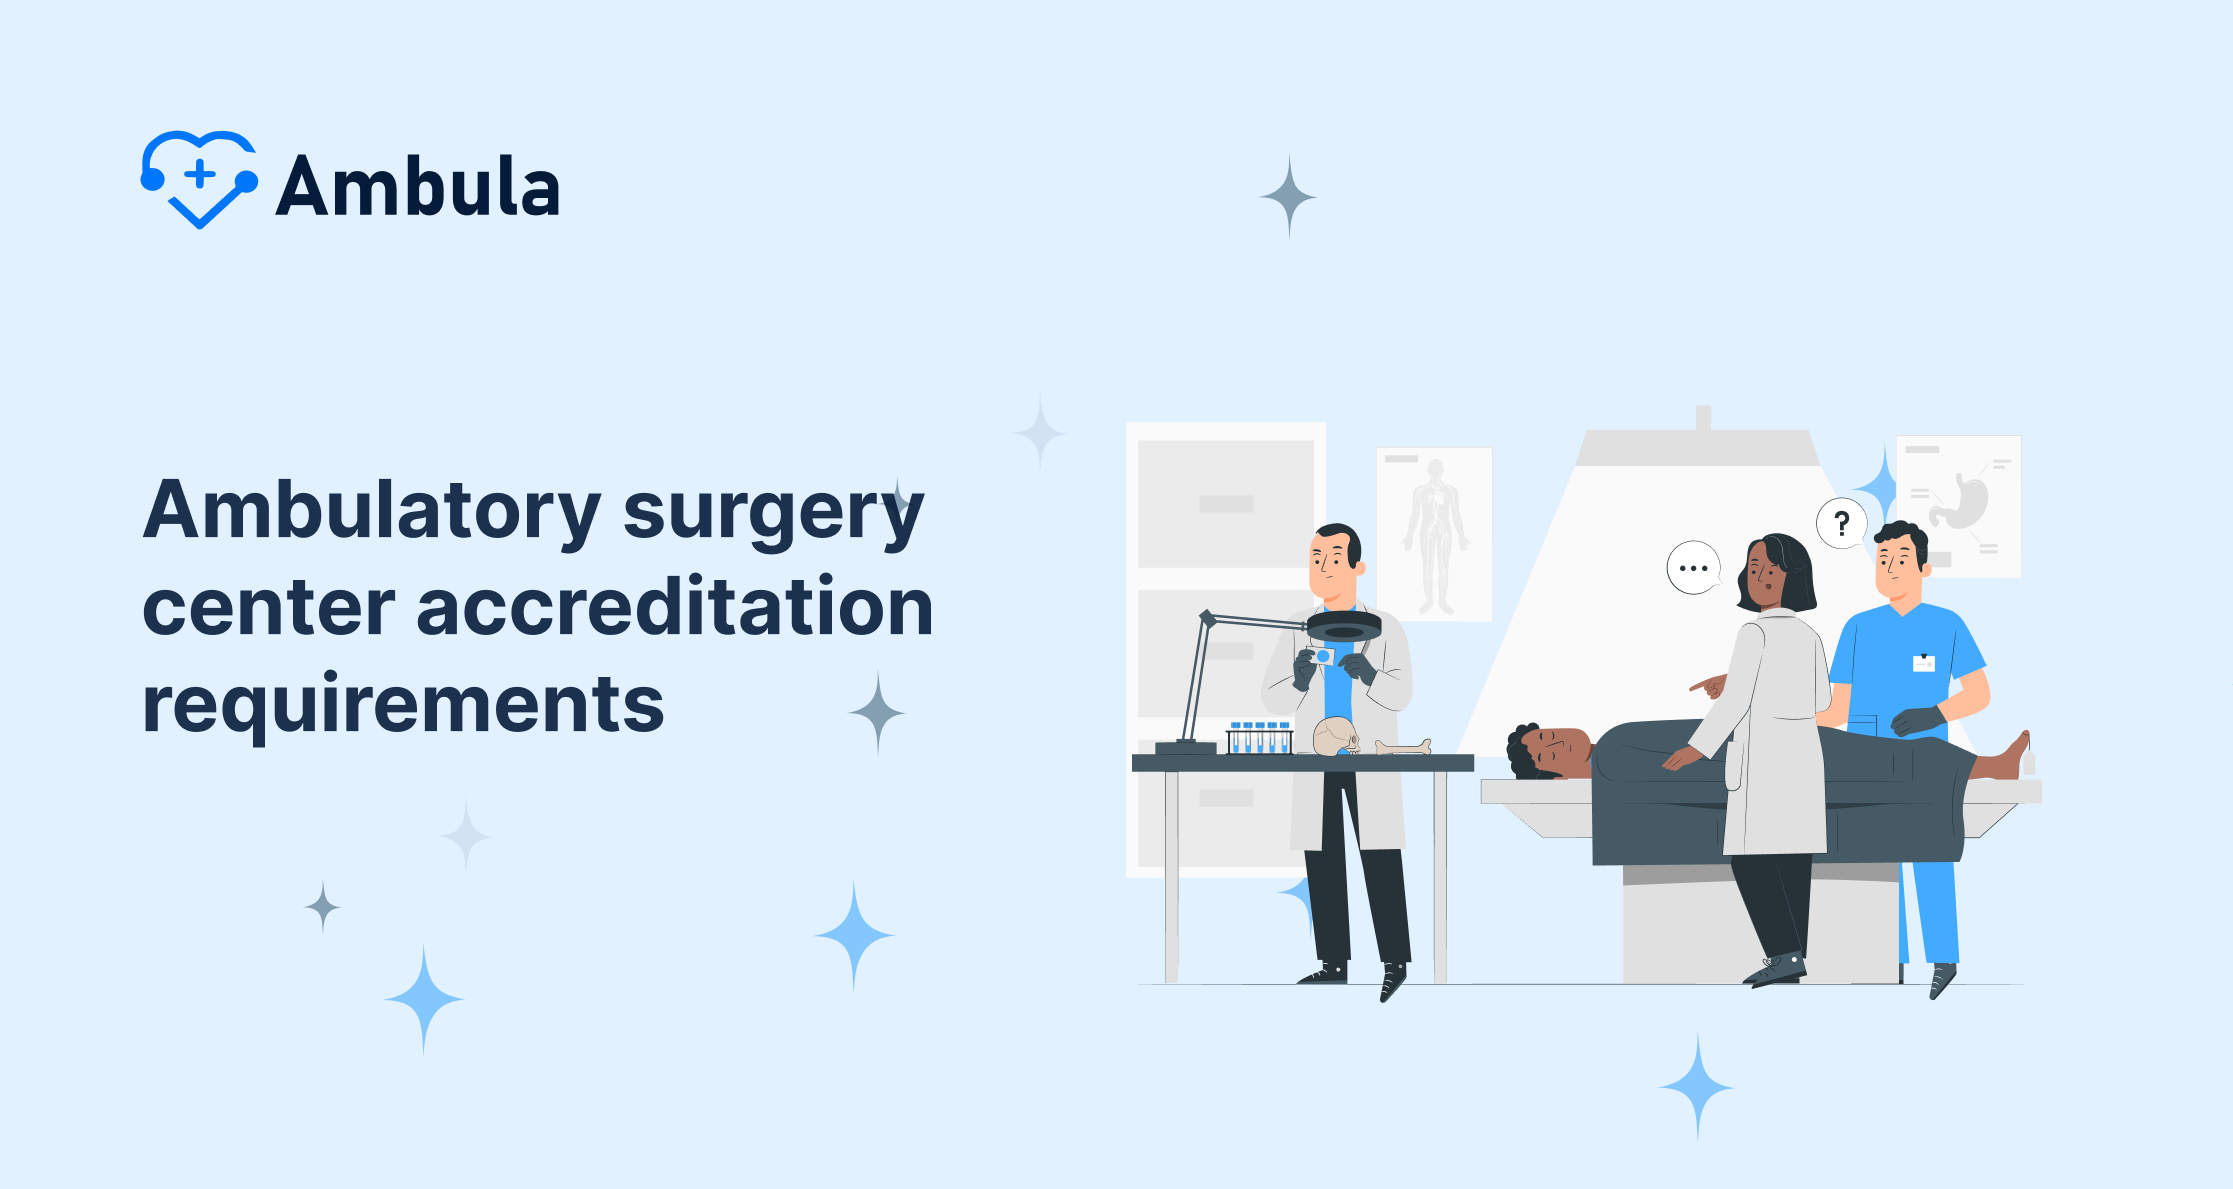 Ambulatory surgery center accreditation requirements